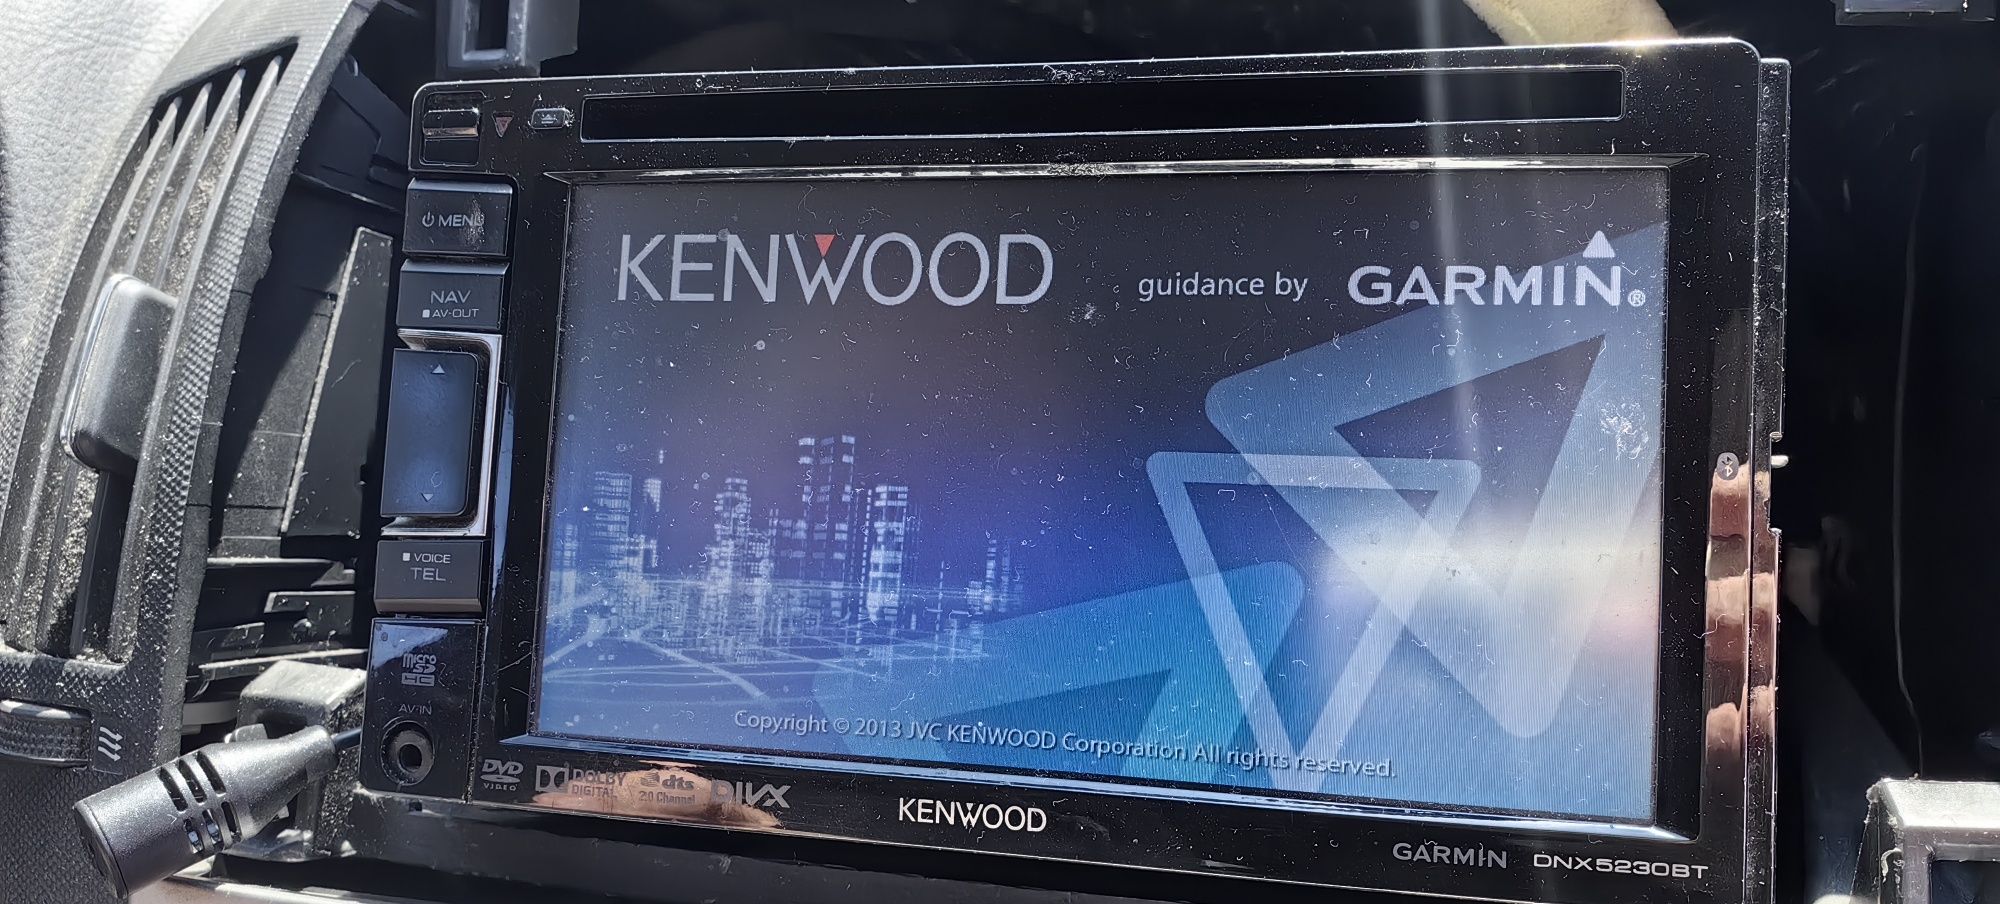 Radio samochodowe Kenwood Garmin dnx5230BT